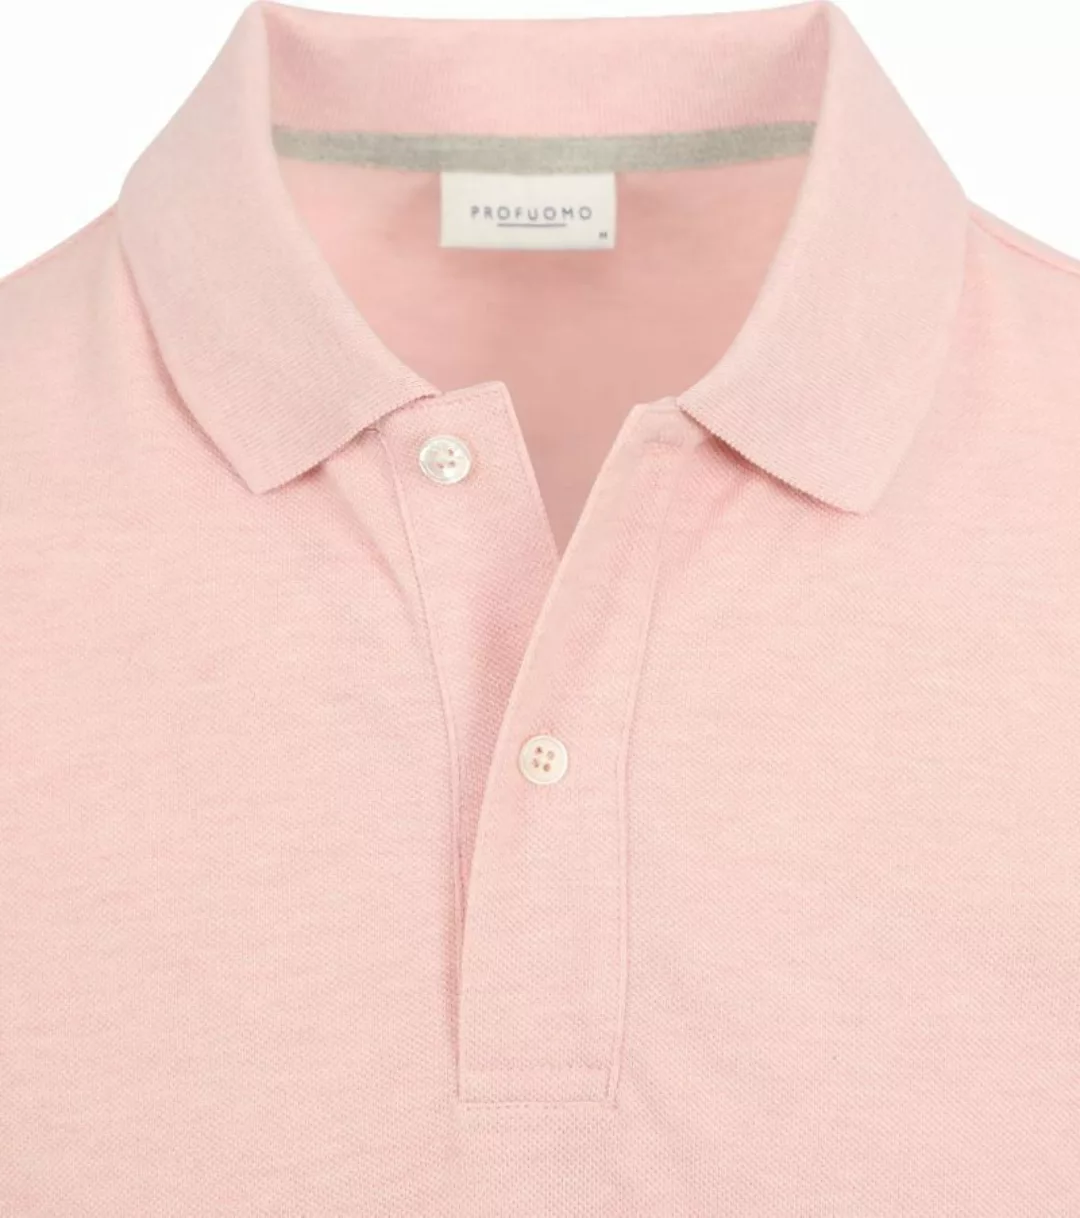 Profuomo Piqué Poloshirt Rosa - Größe M günstig online kaufen